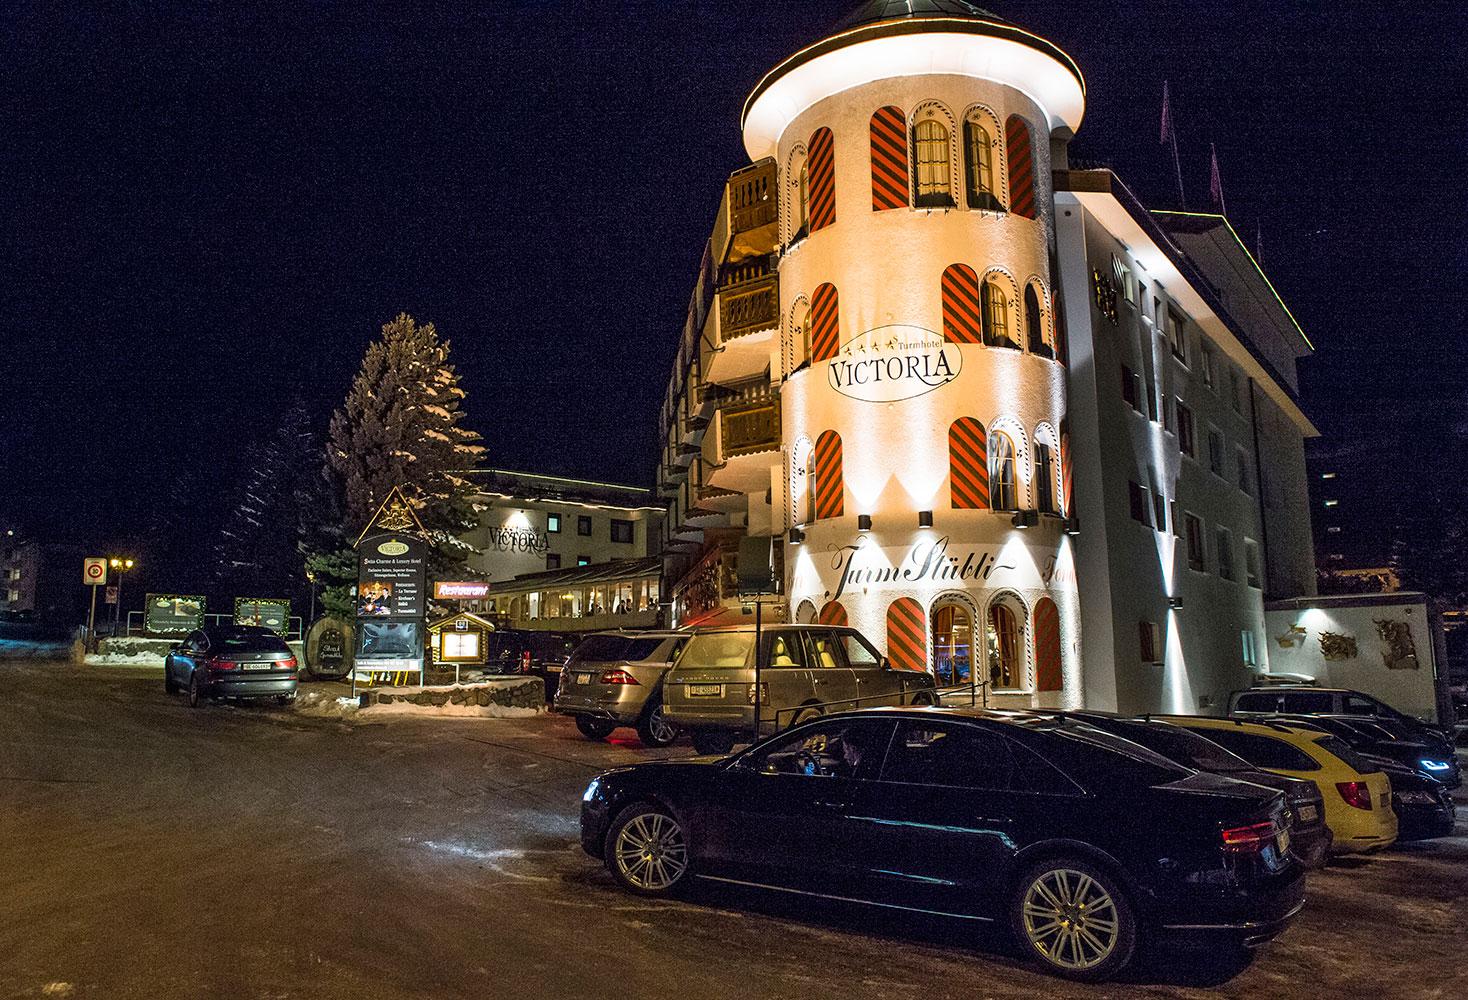 Turm Hotel Victoria i Davos. Här var middagen för Löfven och de andra höjdarna.